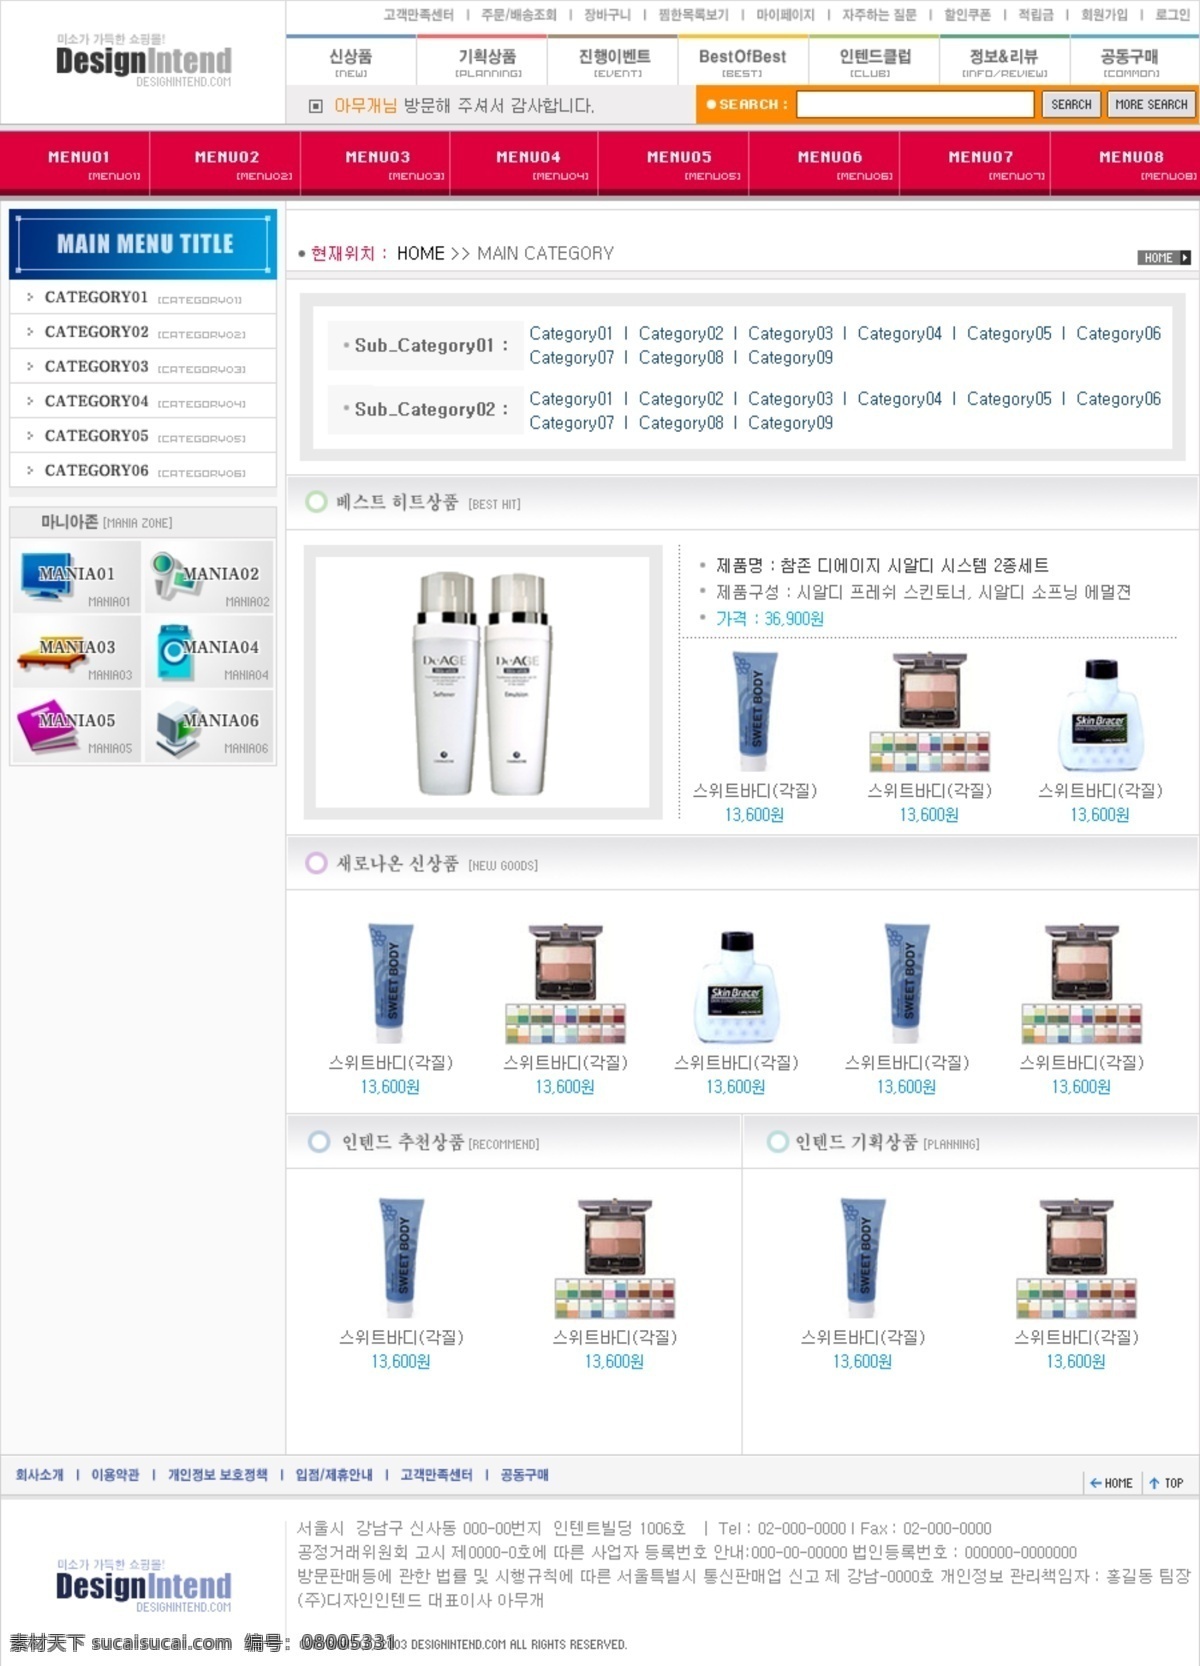 韩国 网页设计 模板 六 十 八 成杓颇辶 白色